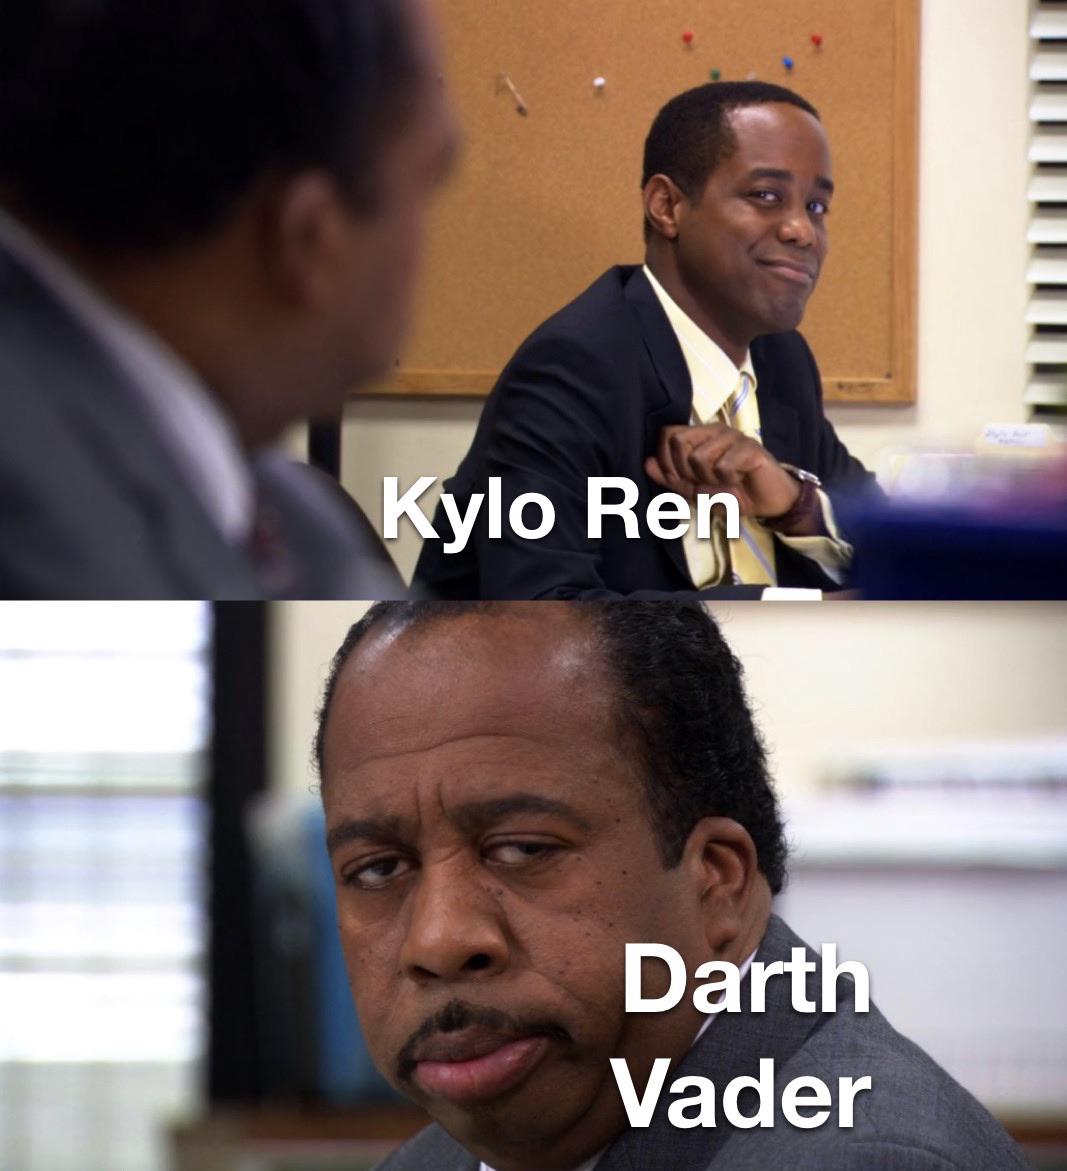 Sequel-memes, Ren Star Wars Memes Sequel-memes, Ren text: lo Ree Dart Vader 